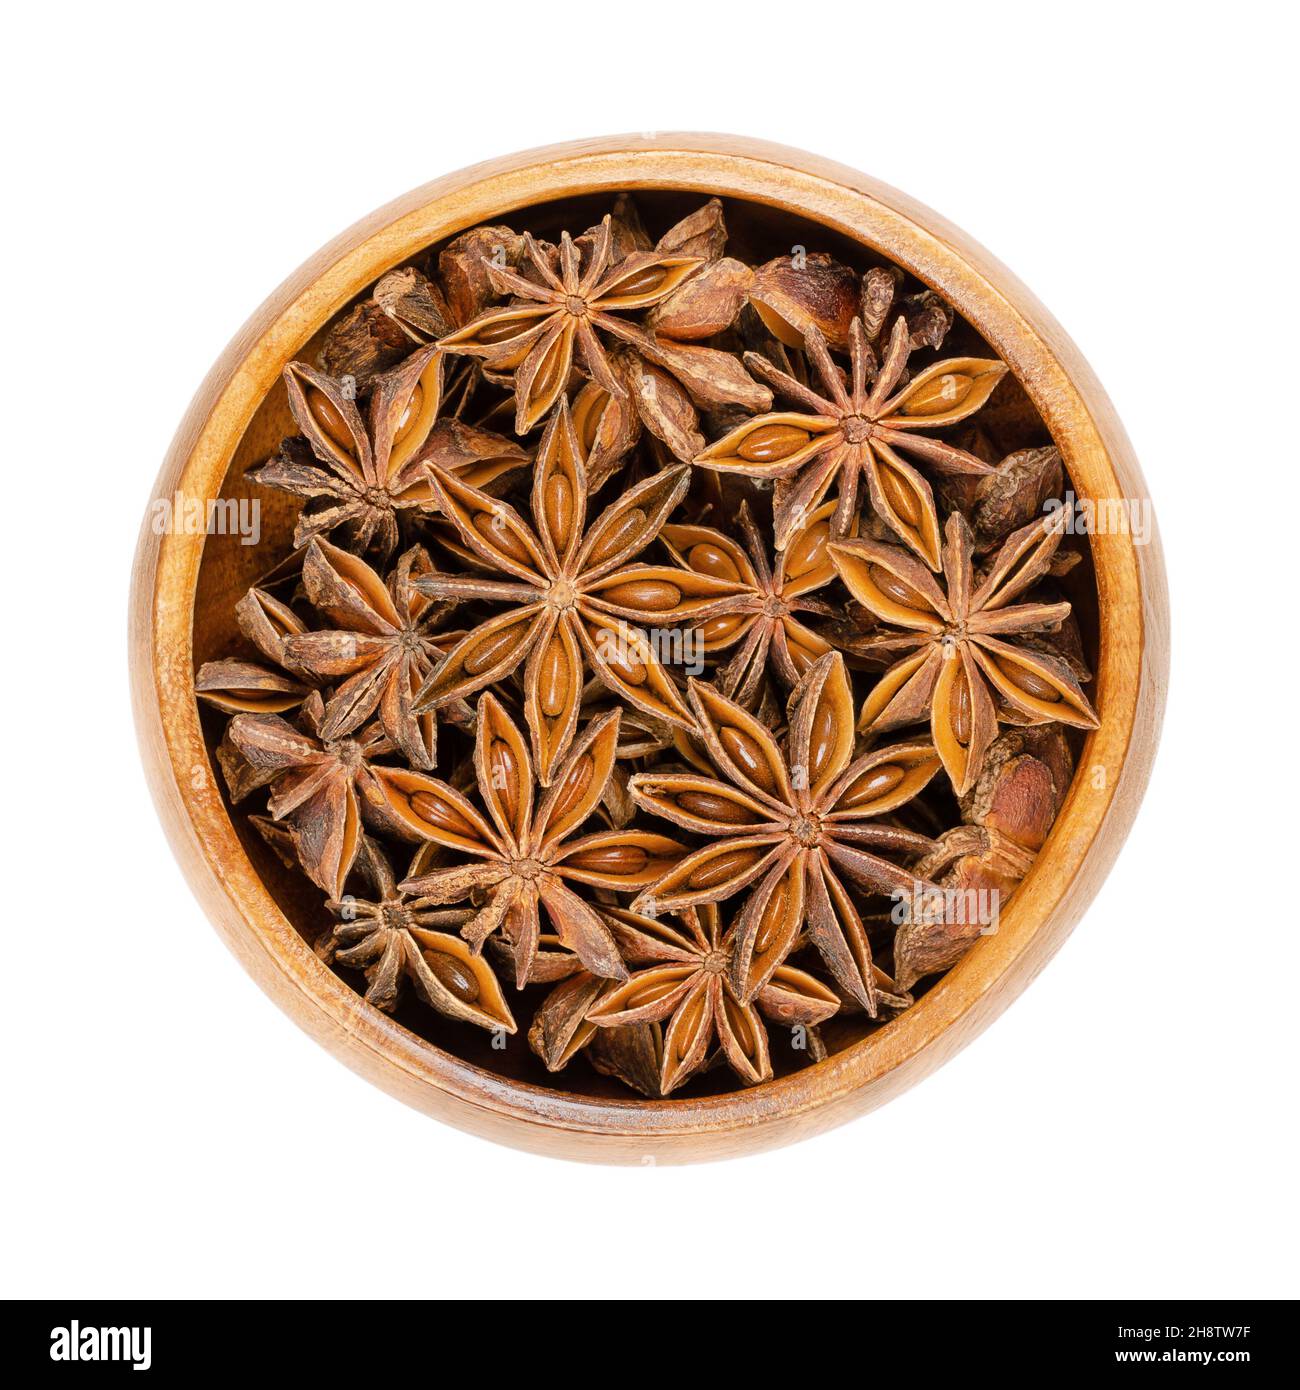 Sternanisfrüchte und Samen, in einer Holzschale. Auch bekannt als Staranise, Sternanis oder Badian. Getrocknete, sternförmige Perikarpfen von Illicium verum. Stockfoto